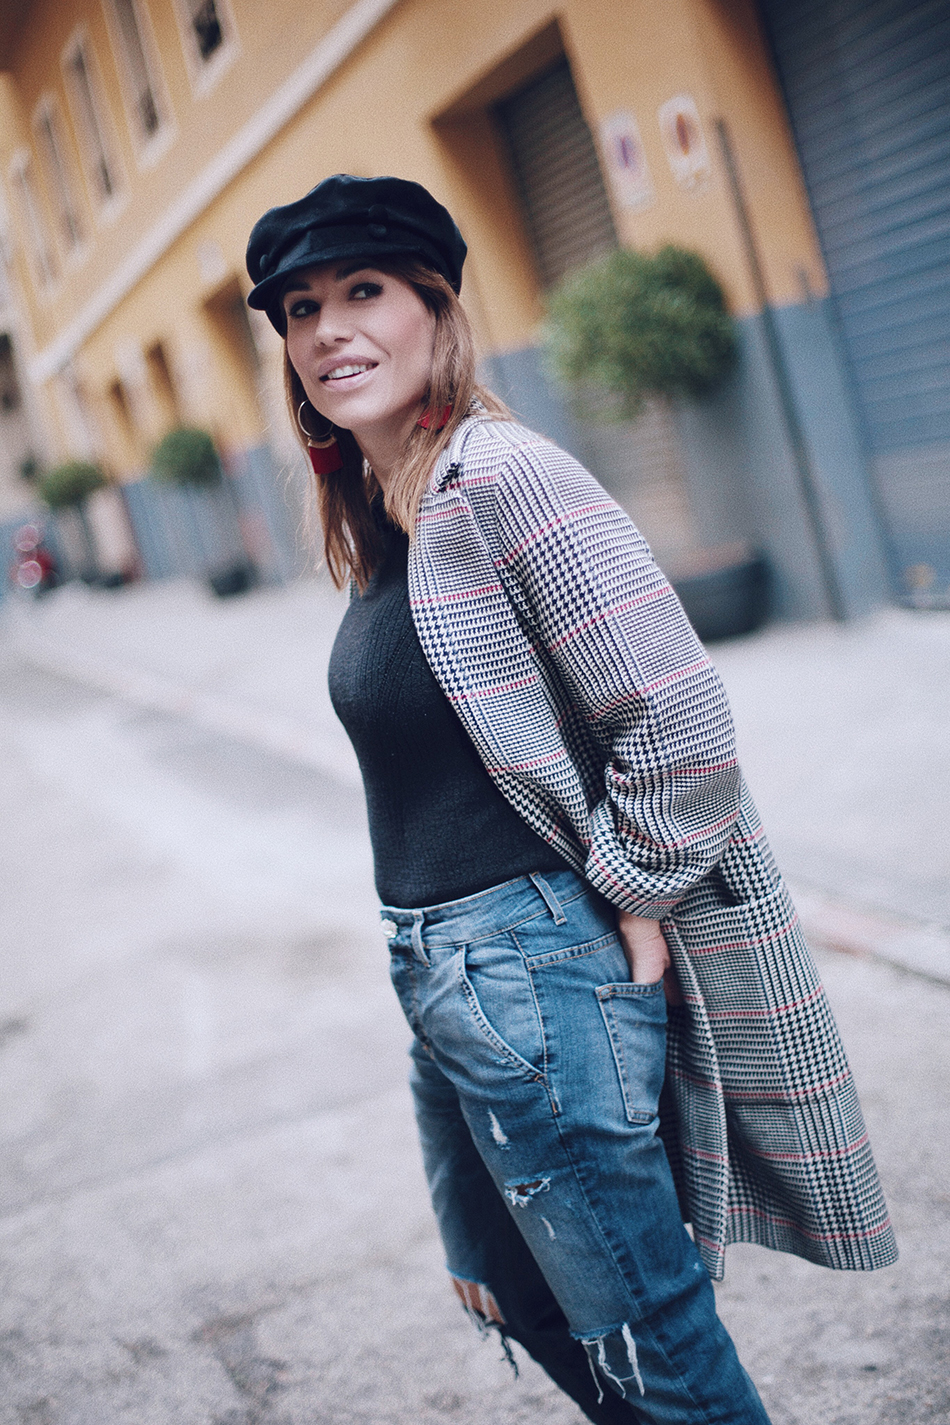 Bárbara Crespo street style / Checkered print coat from Zara / jeans from Liu Jo / Nautical Cap from Zara / Trendy outfit